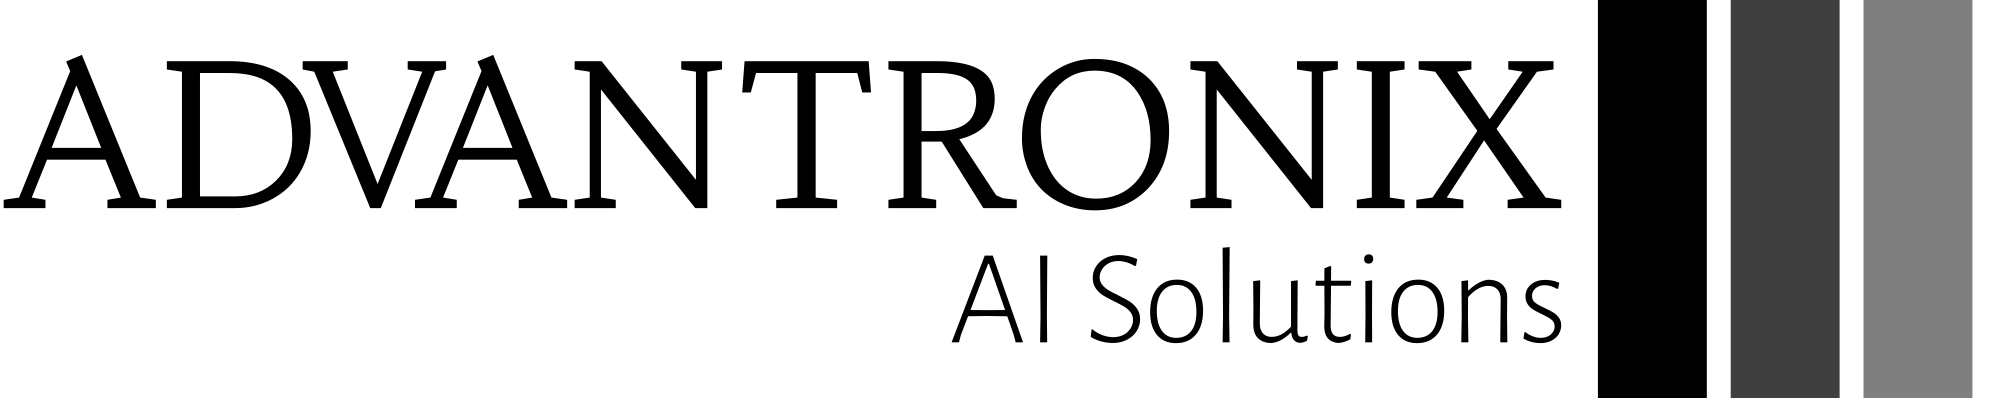 Advantronix AI Solutions